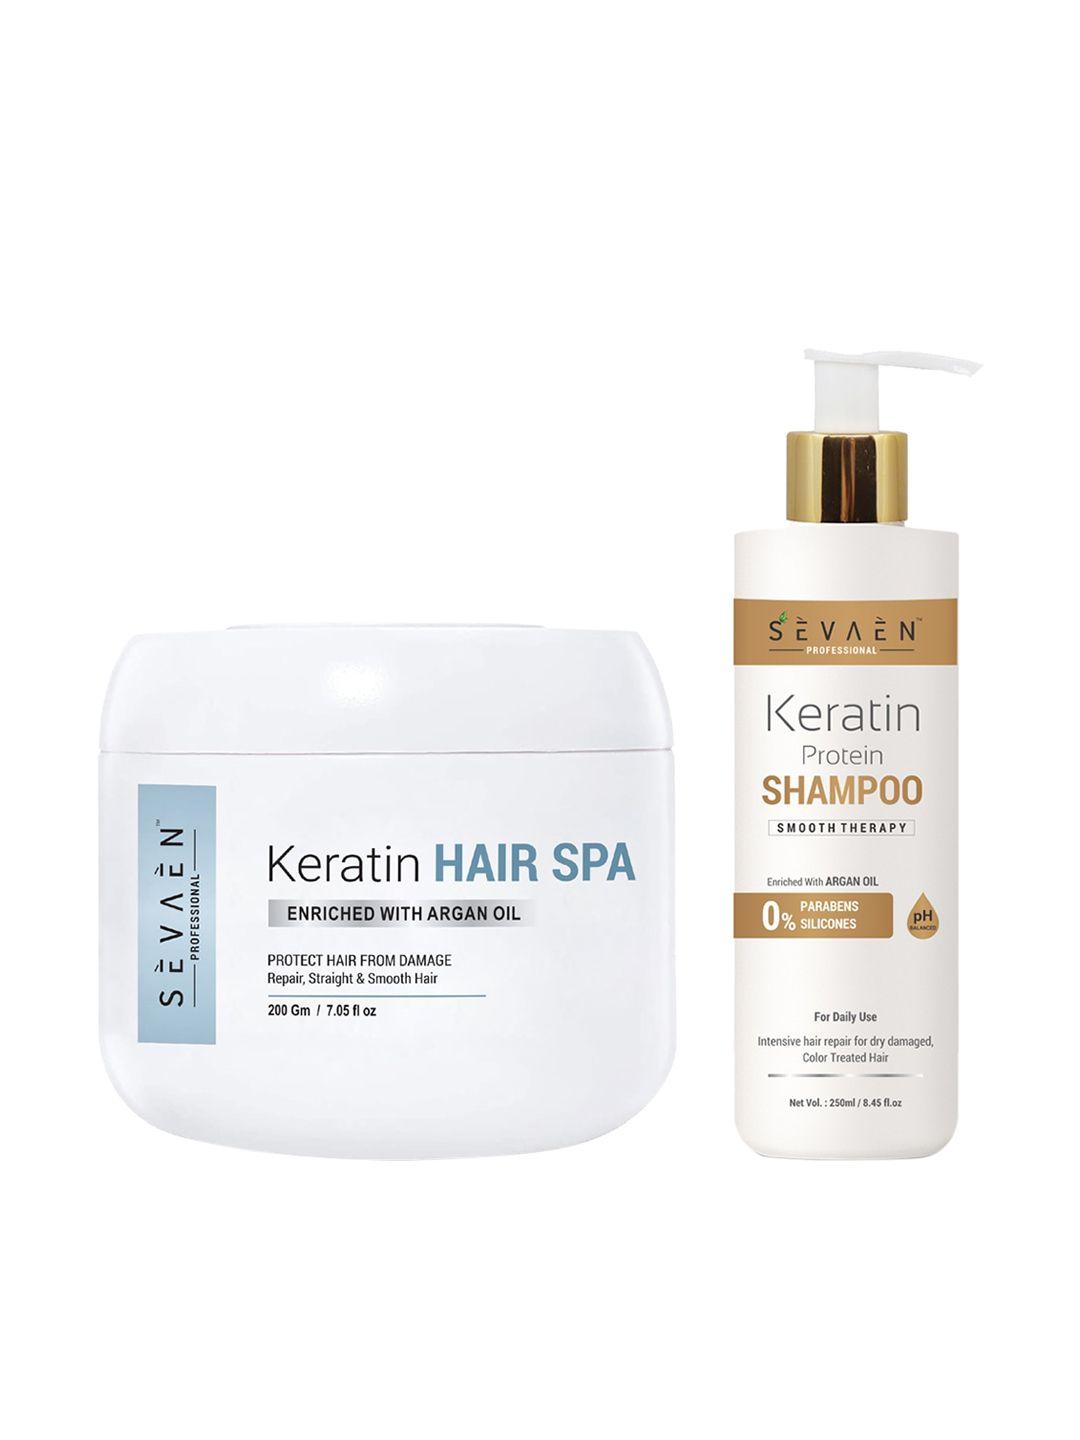 sevaen keratin shampoo and hair spa cream for hair dry & damage repair